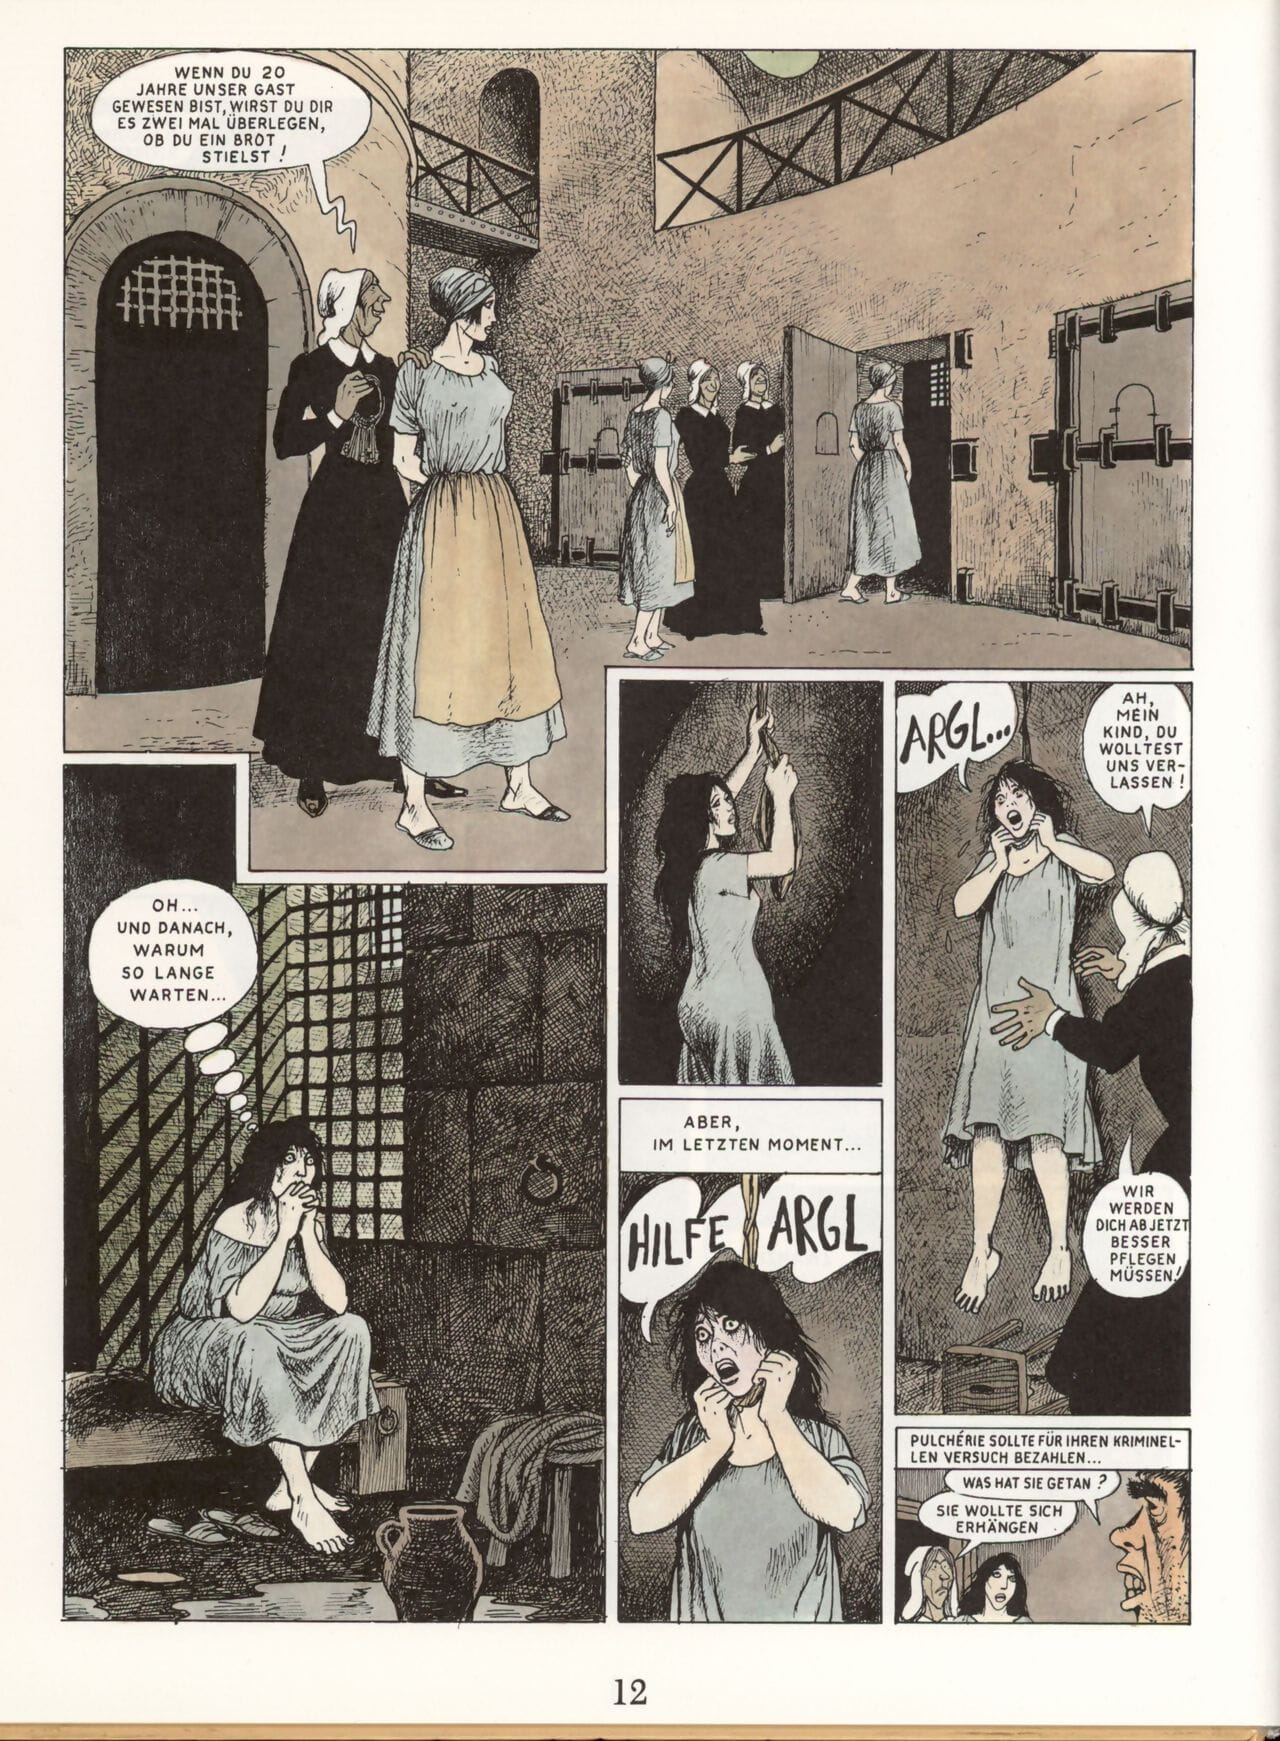 Marie-Gabrielle de Saint-Eutrope #03 : Marie-Gabrielle im Orient page 1